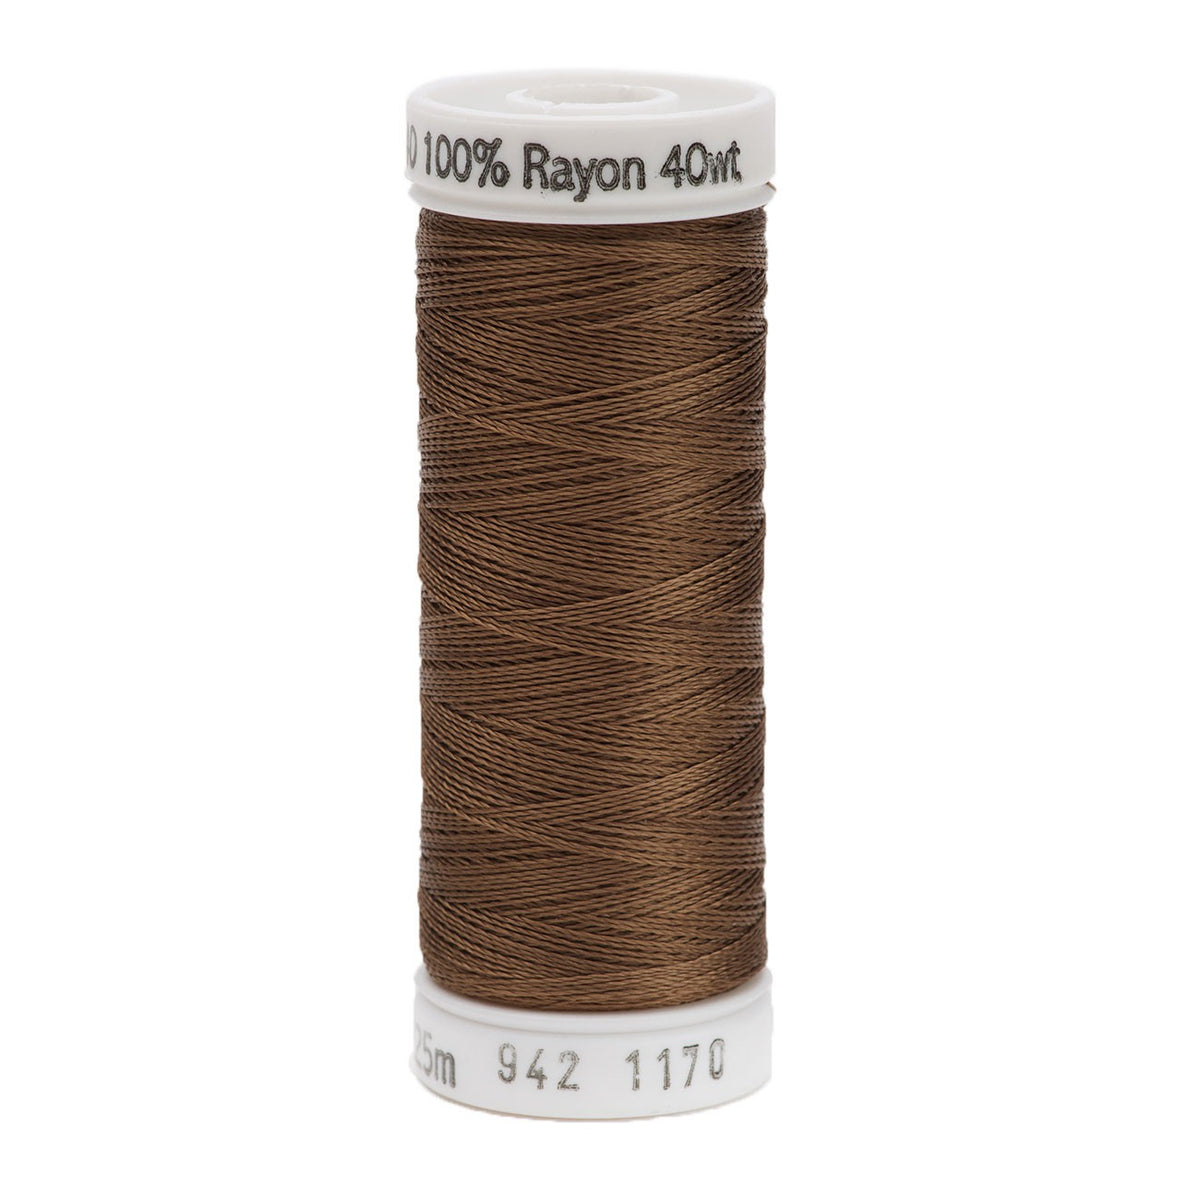 Sulky Rayon 40wt Thread 1170 Light Brown  250yd Spool